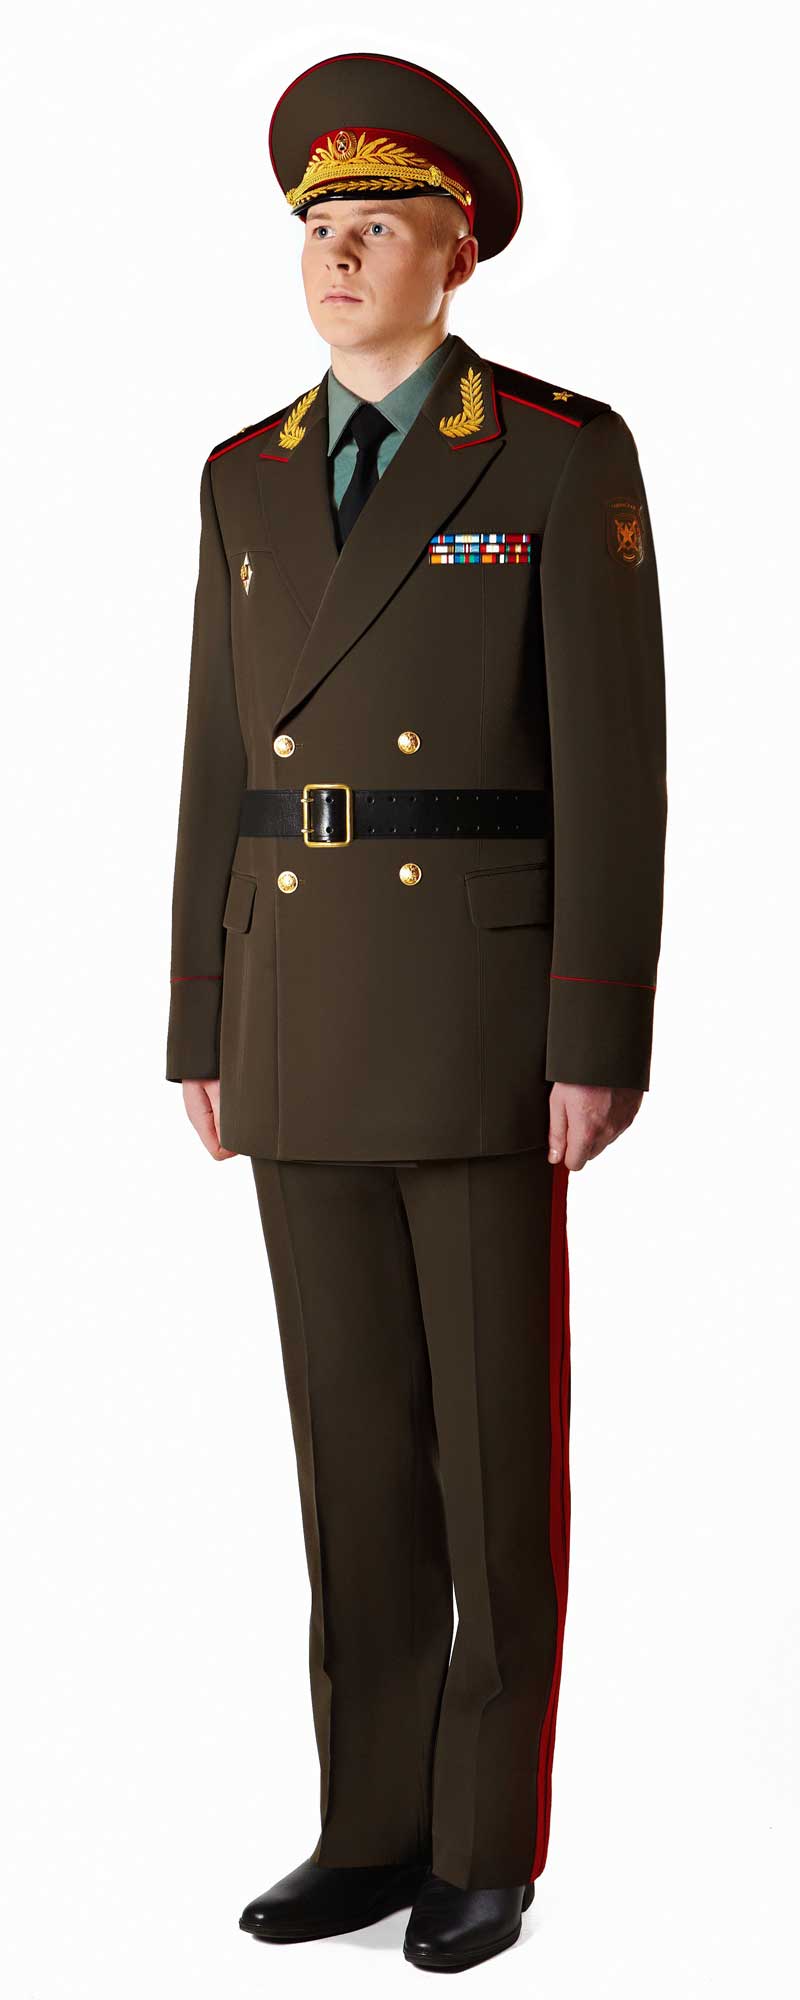 Полковник форма одежды